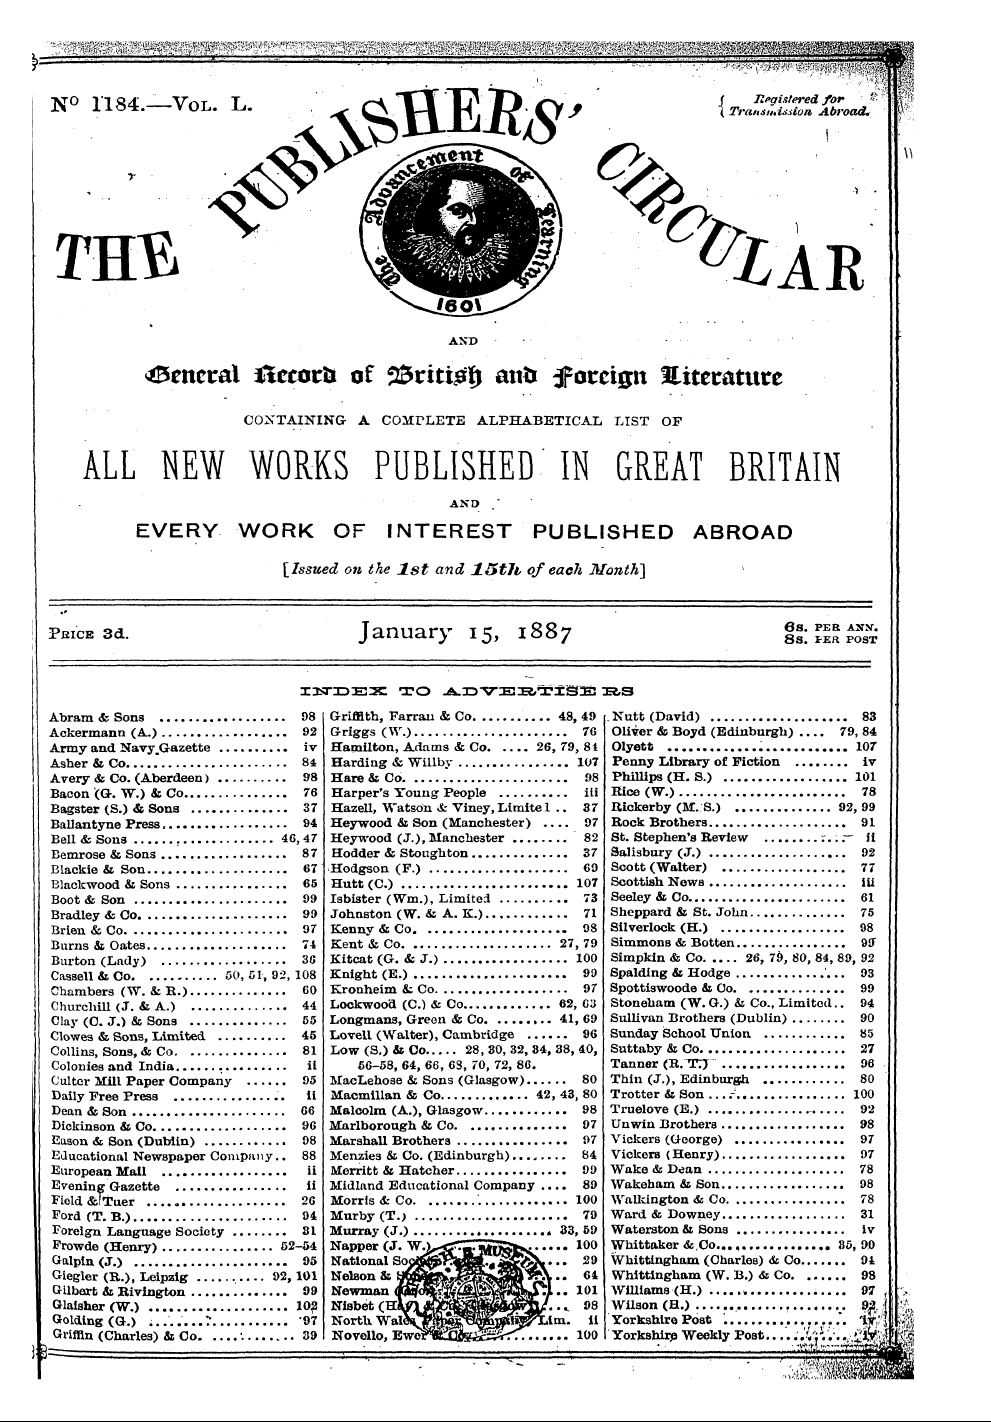 Publishers’ Circular (1880-1890): jS F Y, 1st edition - Abram & Sons 98 Griffith, Farrau & Co .....